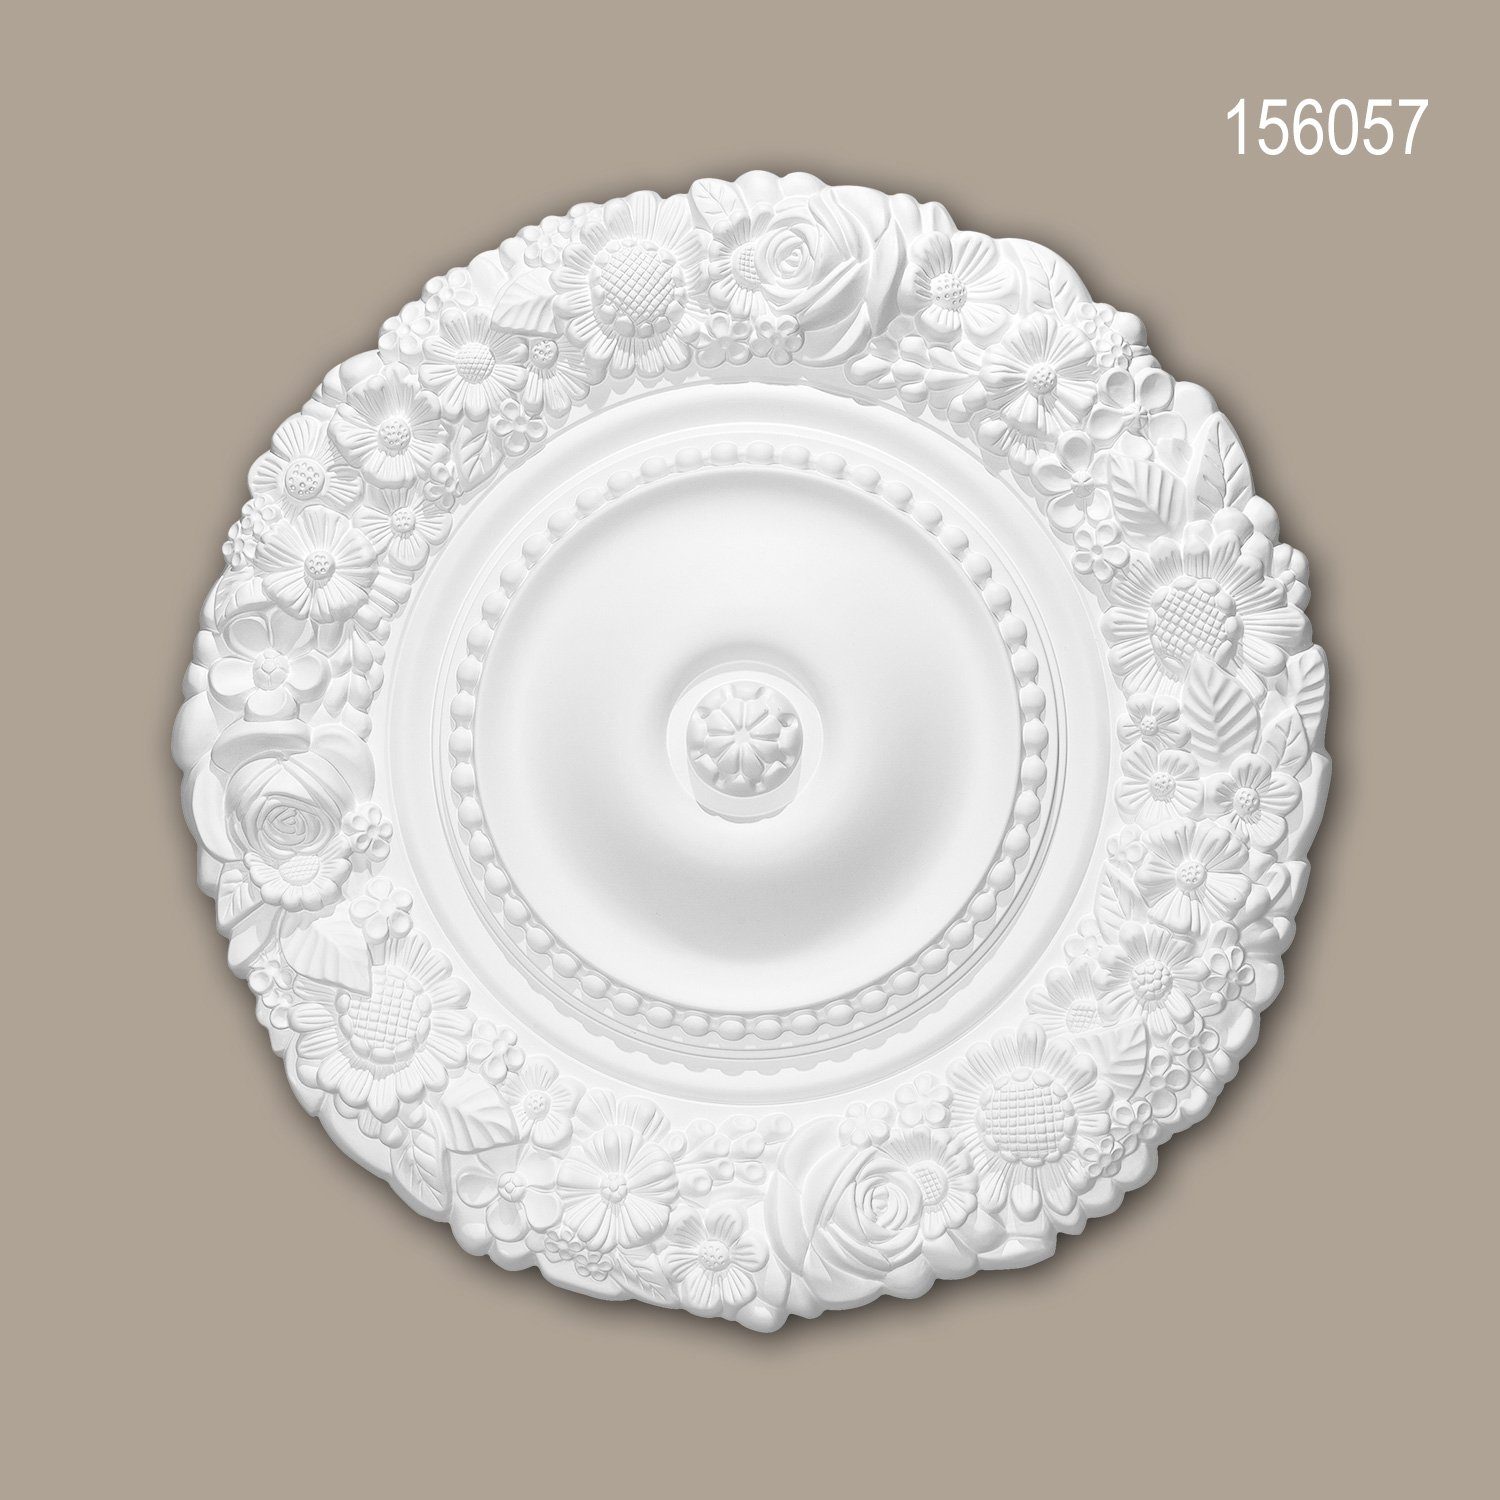 Decken-Rosette Stuckrosette, weiß, Stil: Barock St., 156057 Rokoko Deckenrosette, Durchmesser 1 Zierelement, / vorgrundiert, 54,5 Profhome Deckenelement, cm), (Rosette, Medallion,